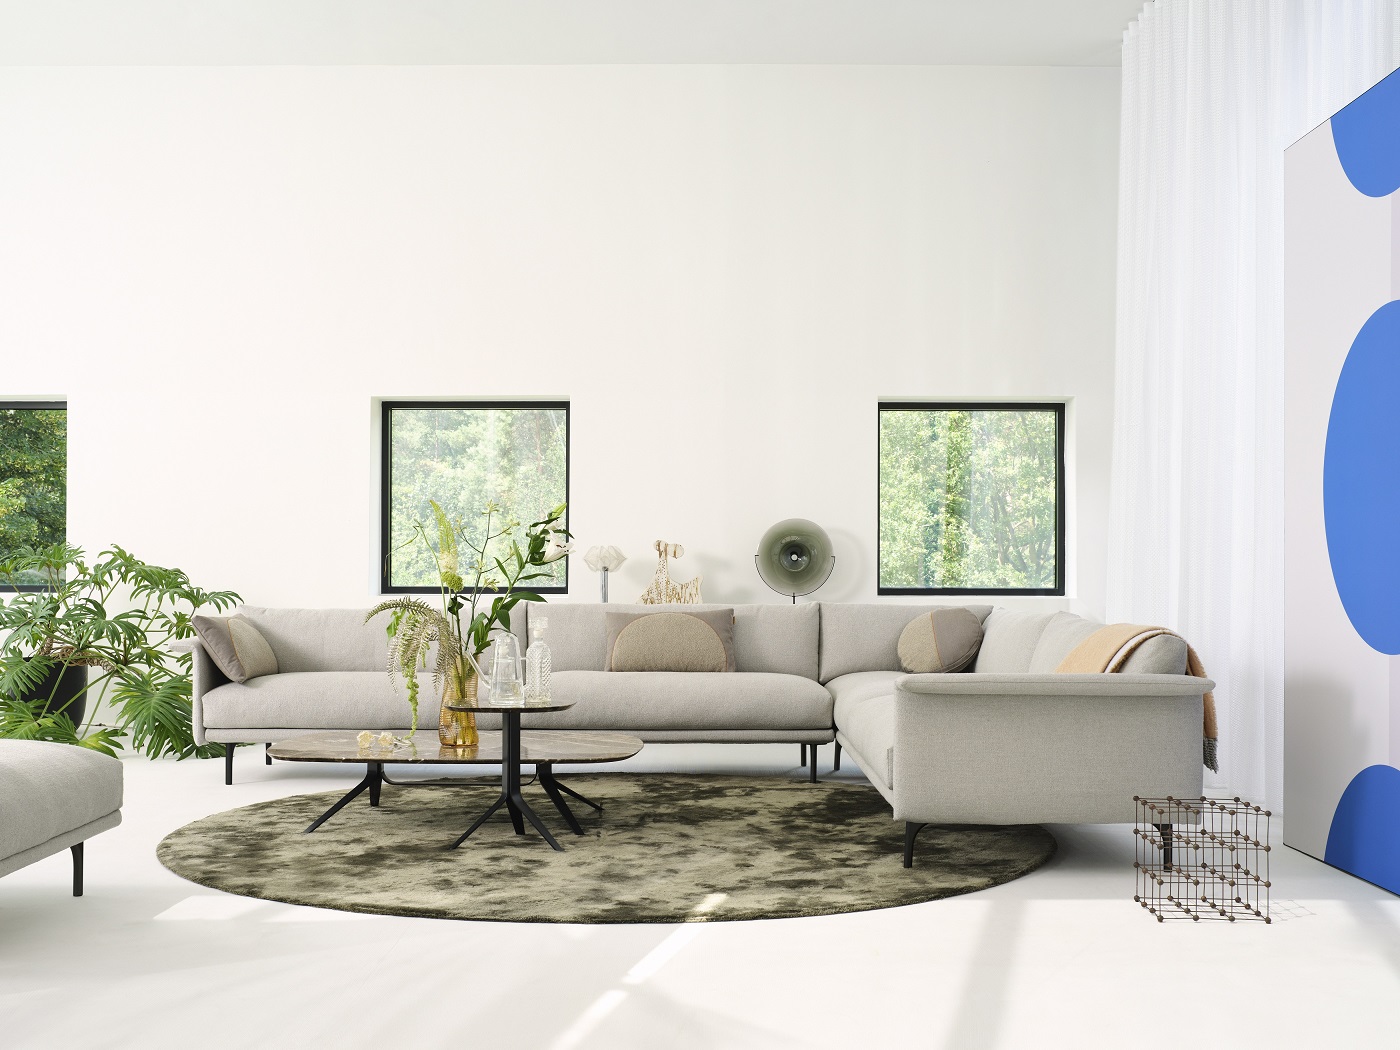 Luxe meubel merken voor uw design interieur